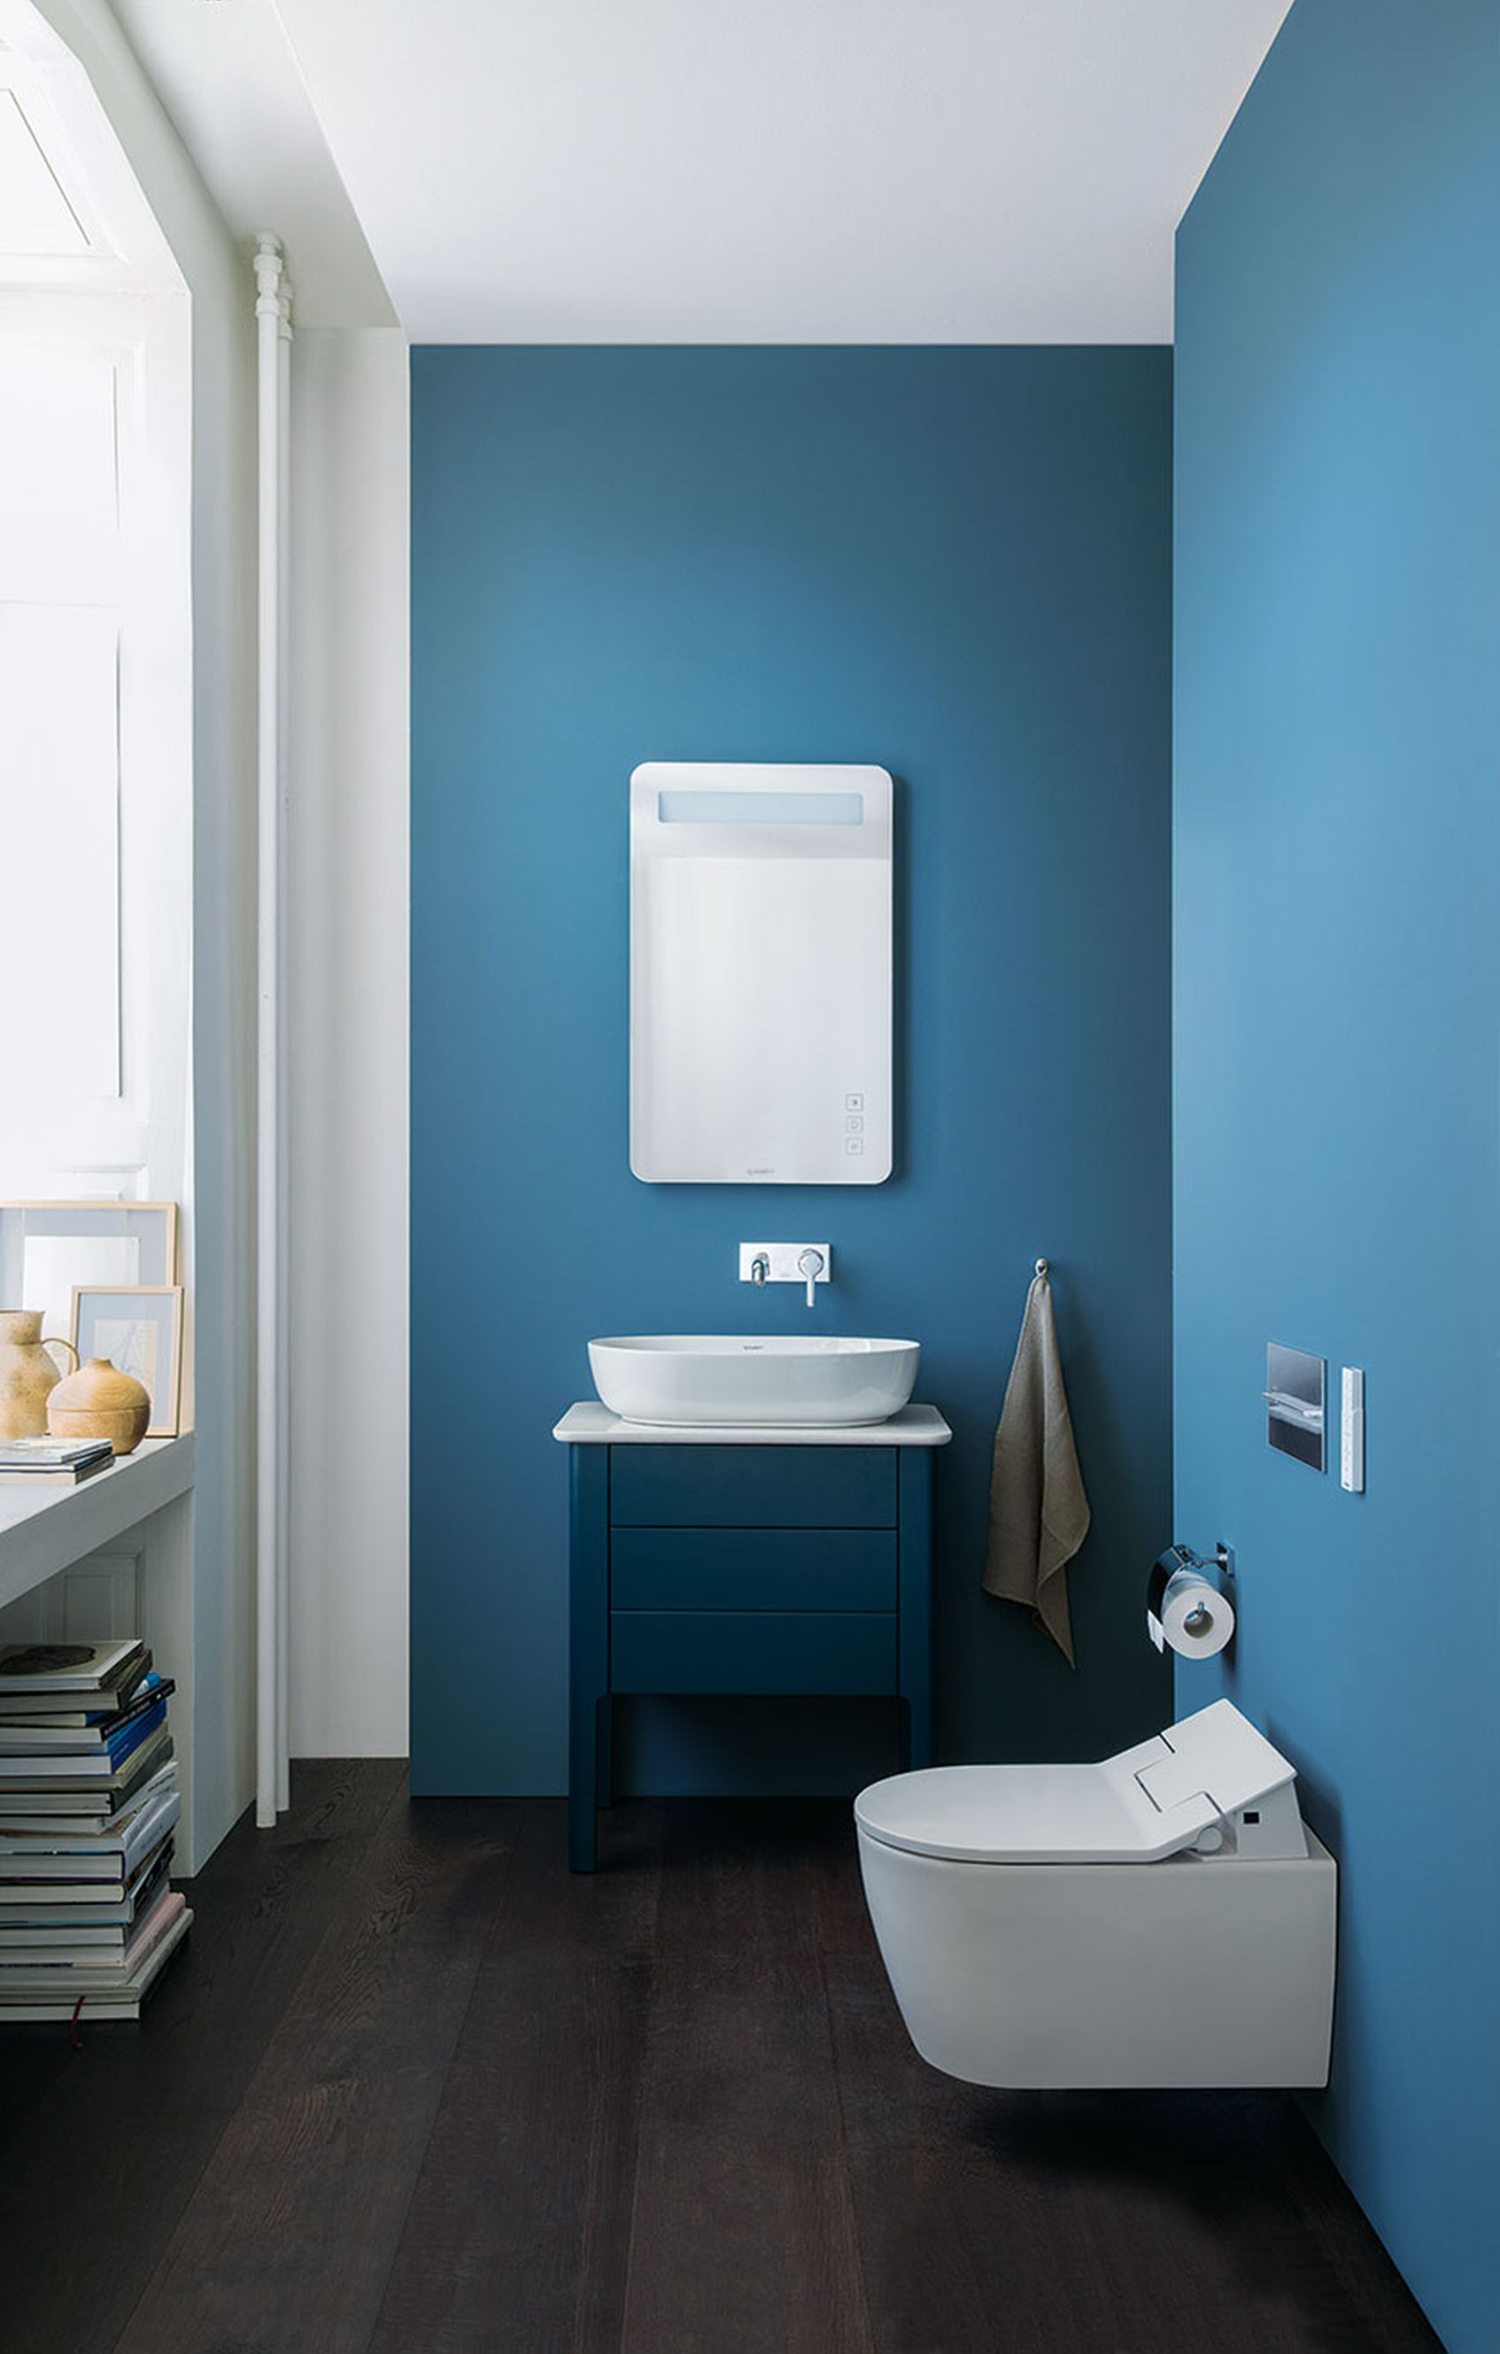 niebieska farba do łazienki, jaki odcień niebieskiego w łazience, łazienka niebieski kolor